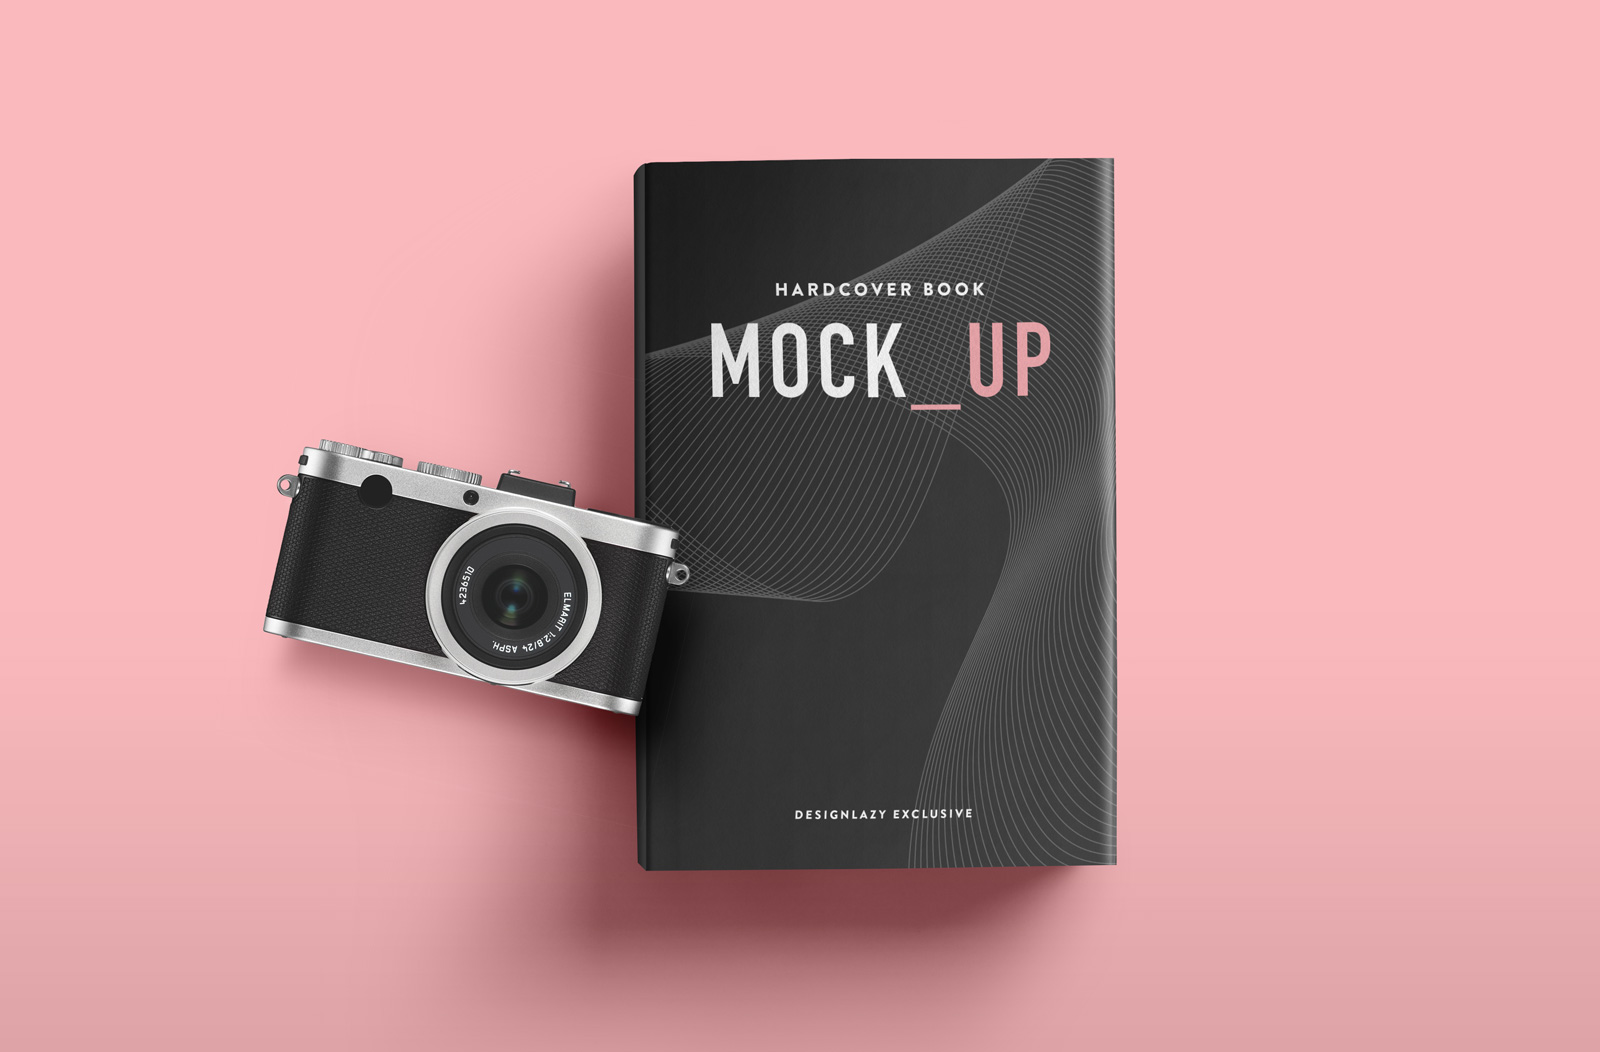 正面黑色精装硬皮书模型设计贴图展示样机PSD模板Hardcover Book Mockup